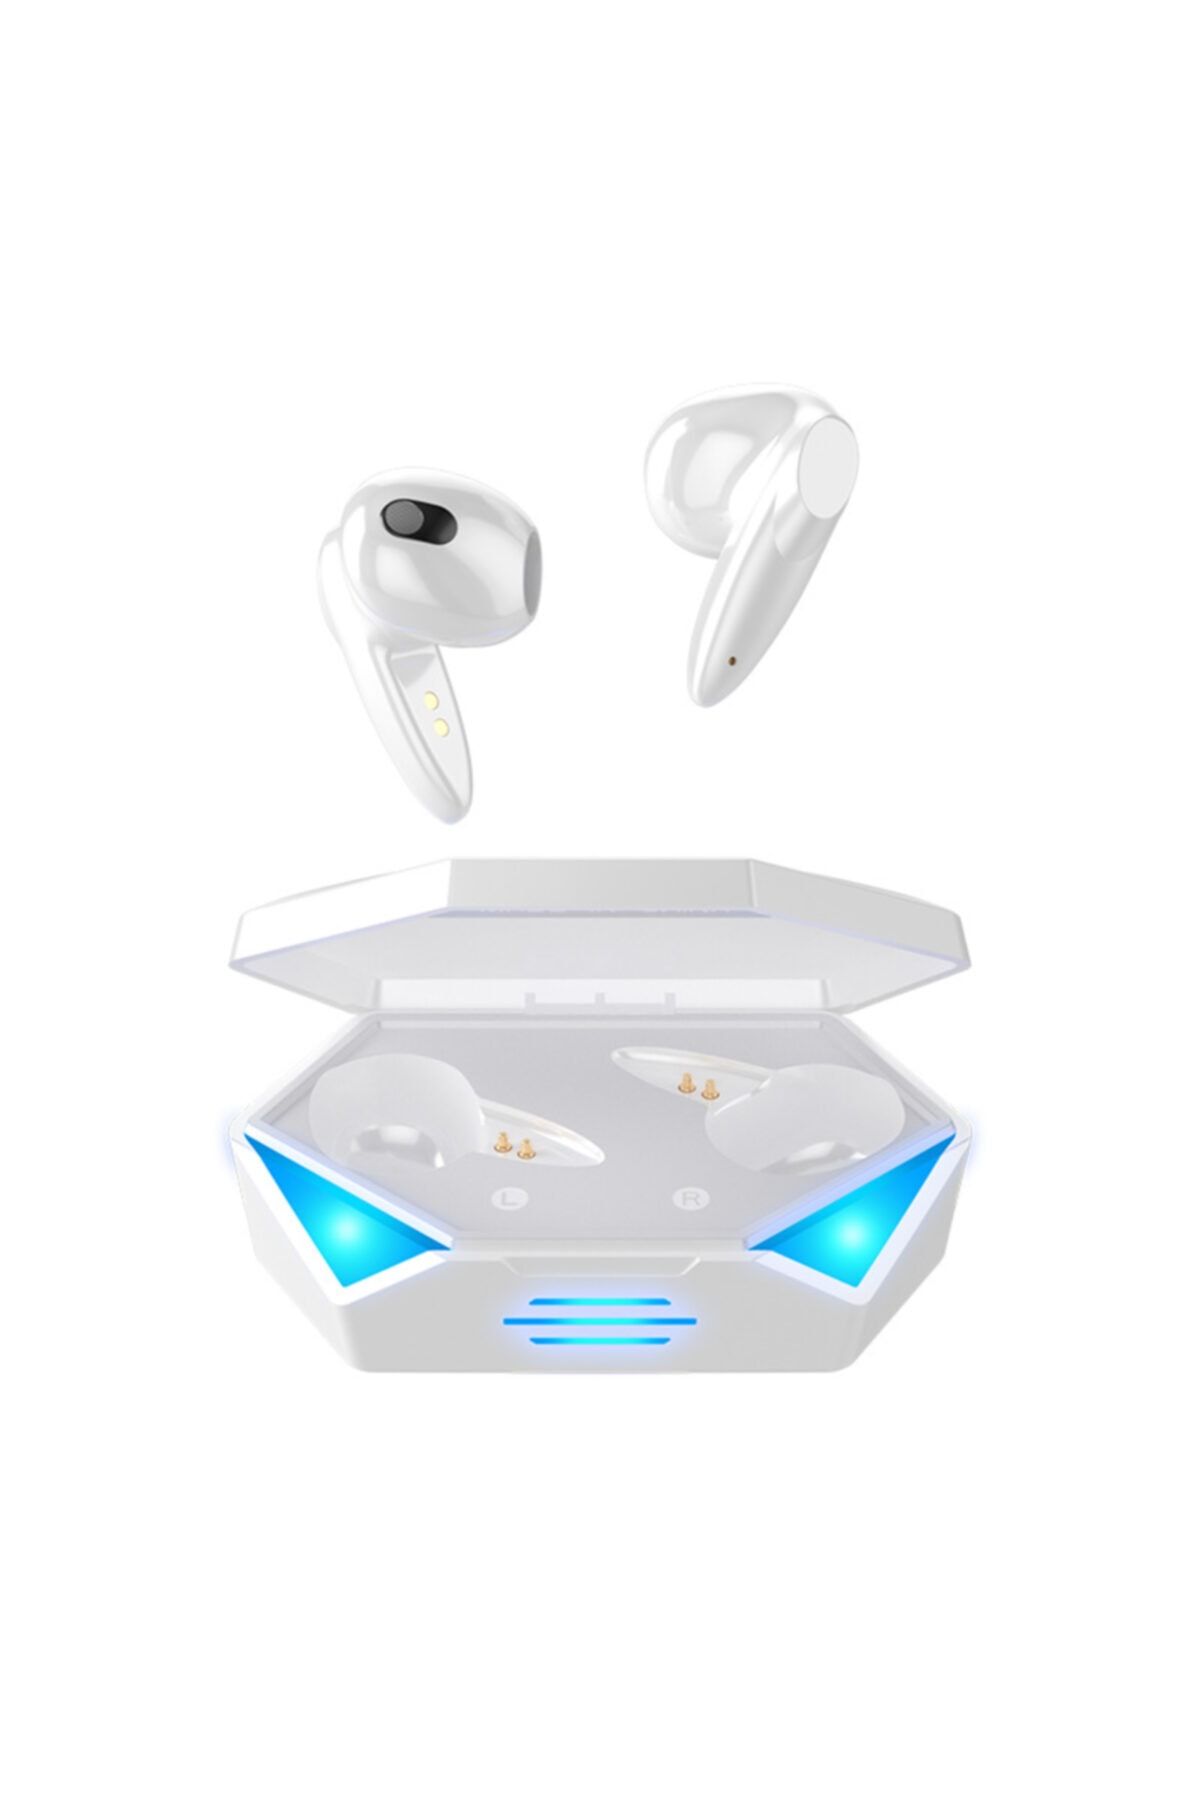 Teknoloji Gelsin Oyuncu Kulaklığı Kablosuz Kulakiçi Rgb Işıklı Çift Mikrofonlu 3 Modlu Bluetooth 5.2 G20 Model